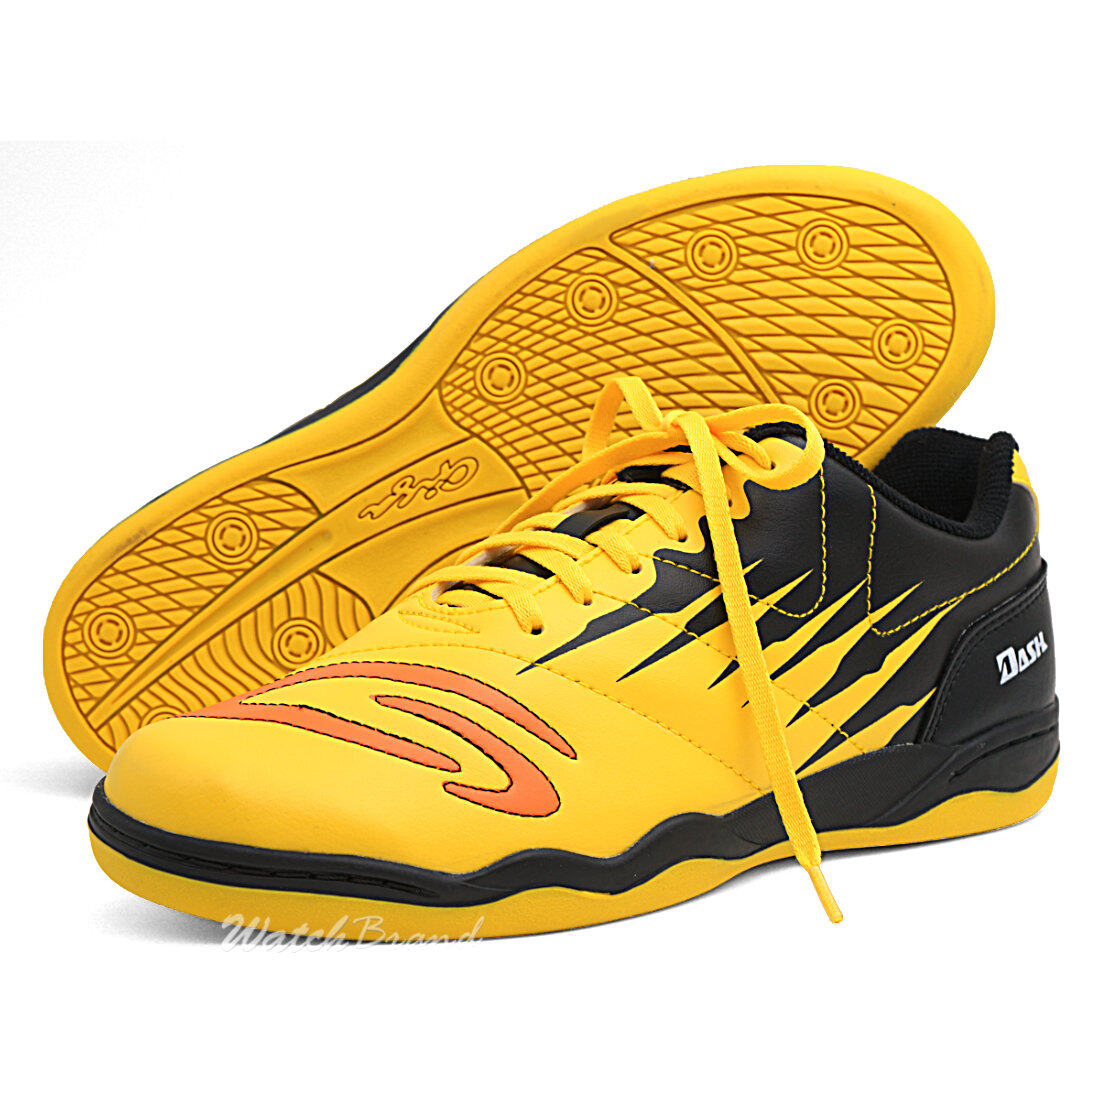 GIGA รองเท้าฟุตซอล รองเท้ากีฬา รุ่น FG414 สีเหลืองดำ